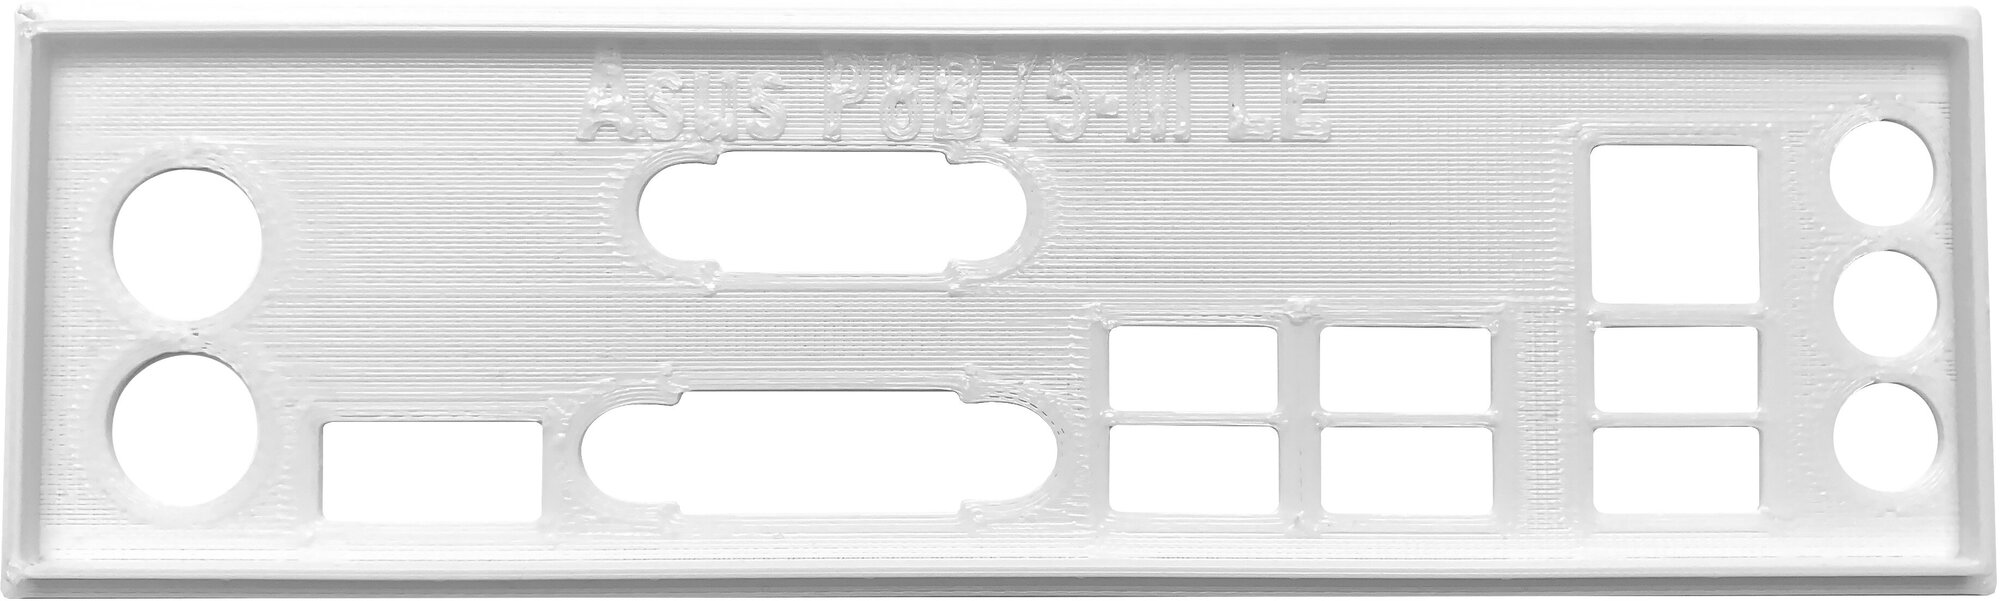 Заглушка для компьютерного корпуса к материнской плате Asus P8B75-M LE